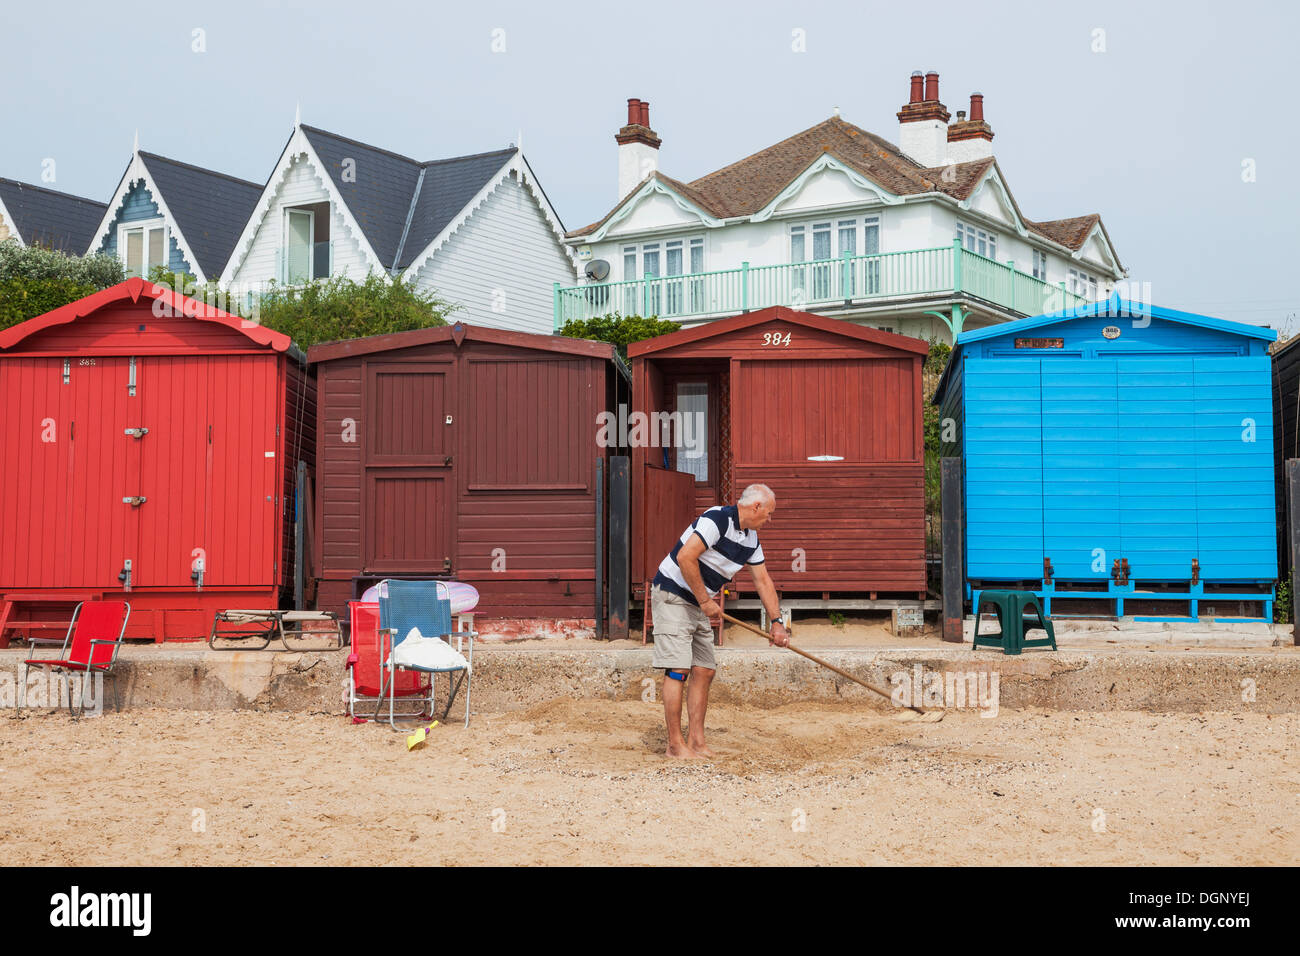 England, East Anglia, Essex, Walton-on-the-Naze, Beach Huts Stock Photo